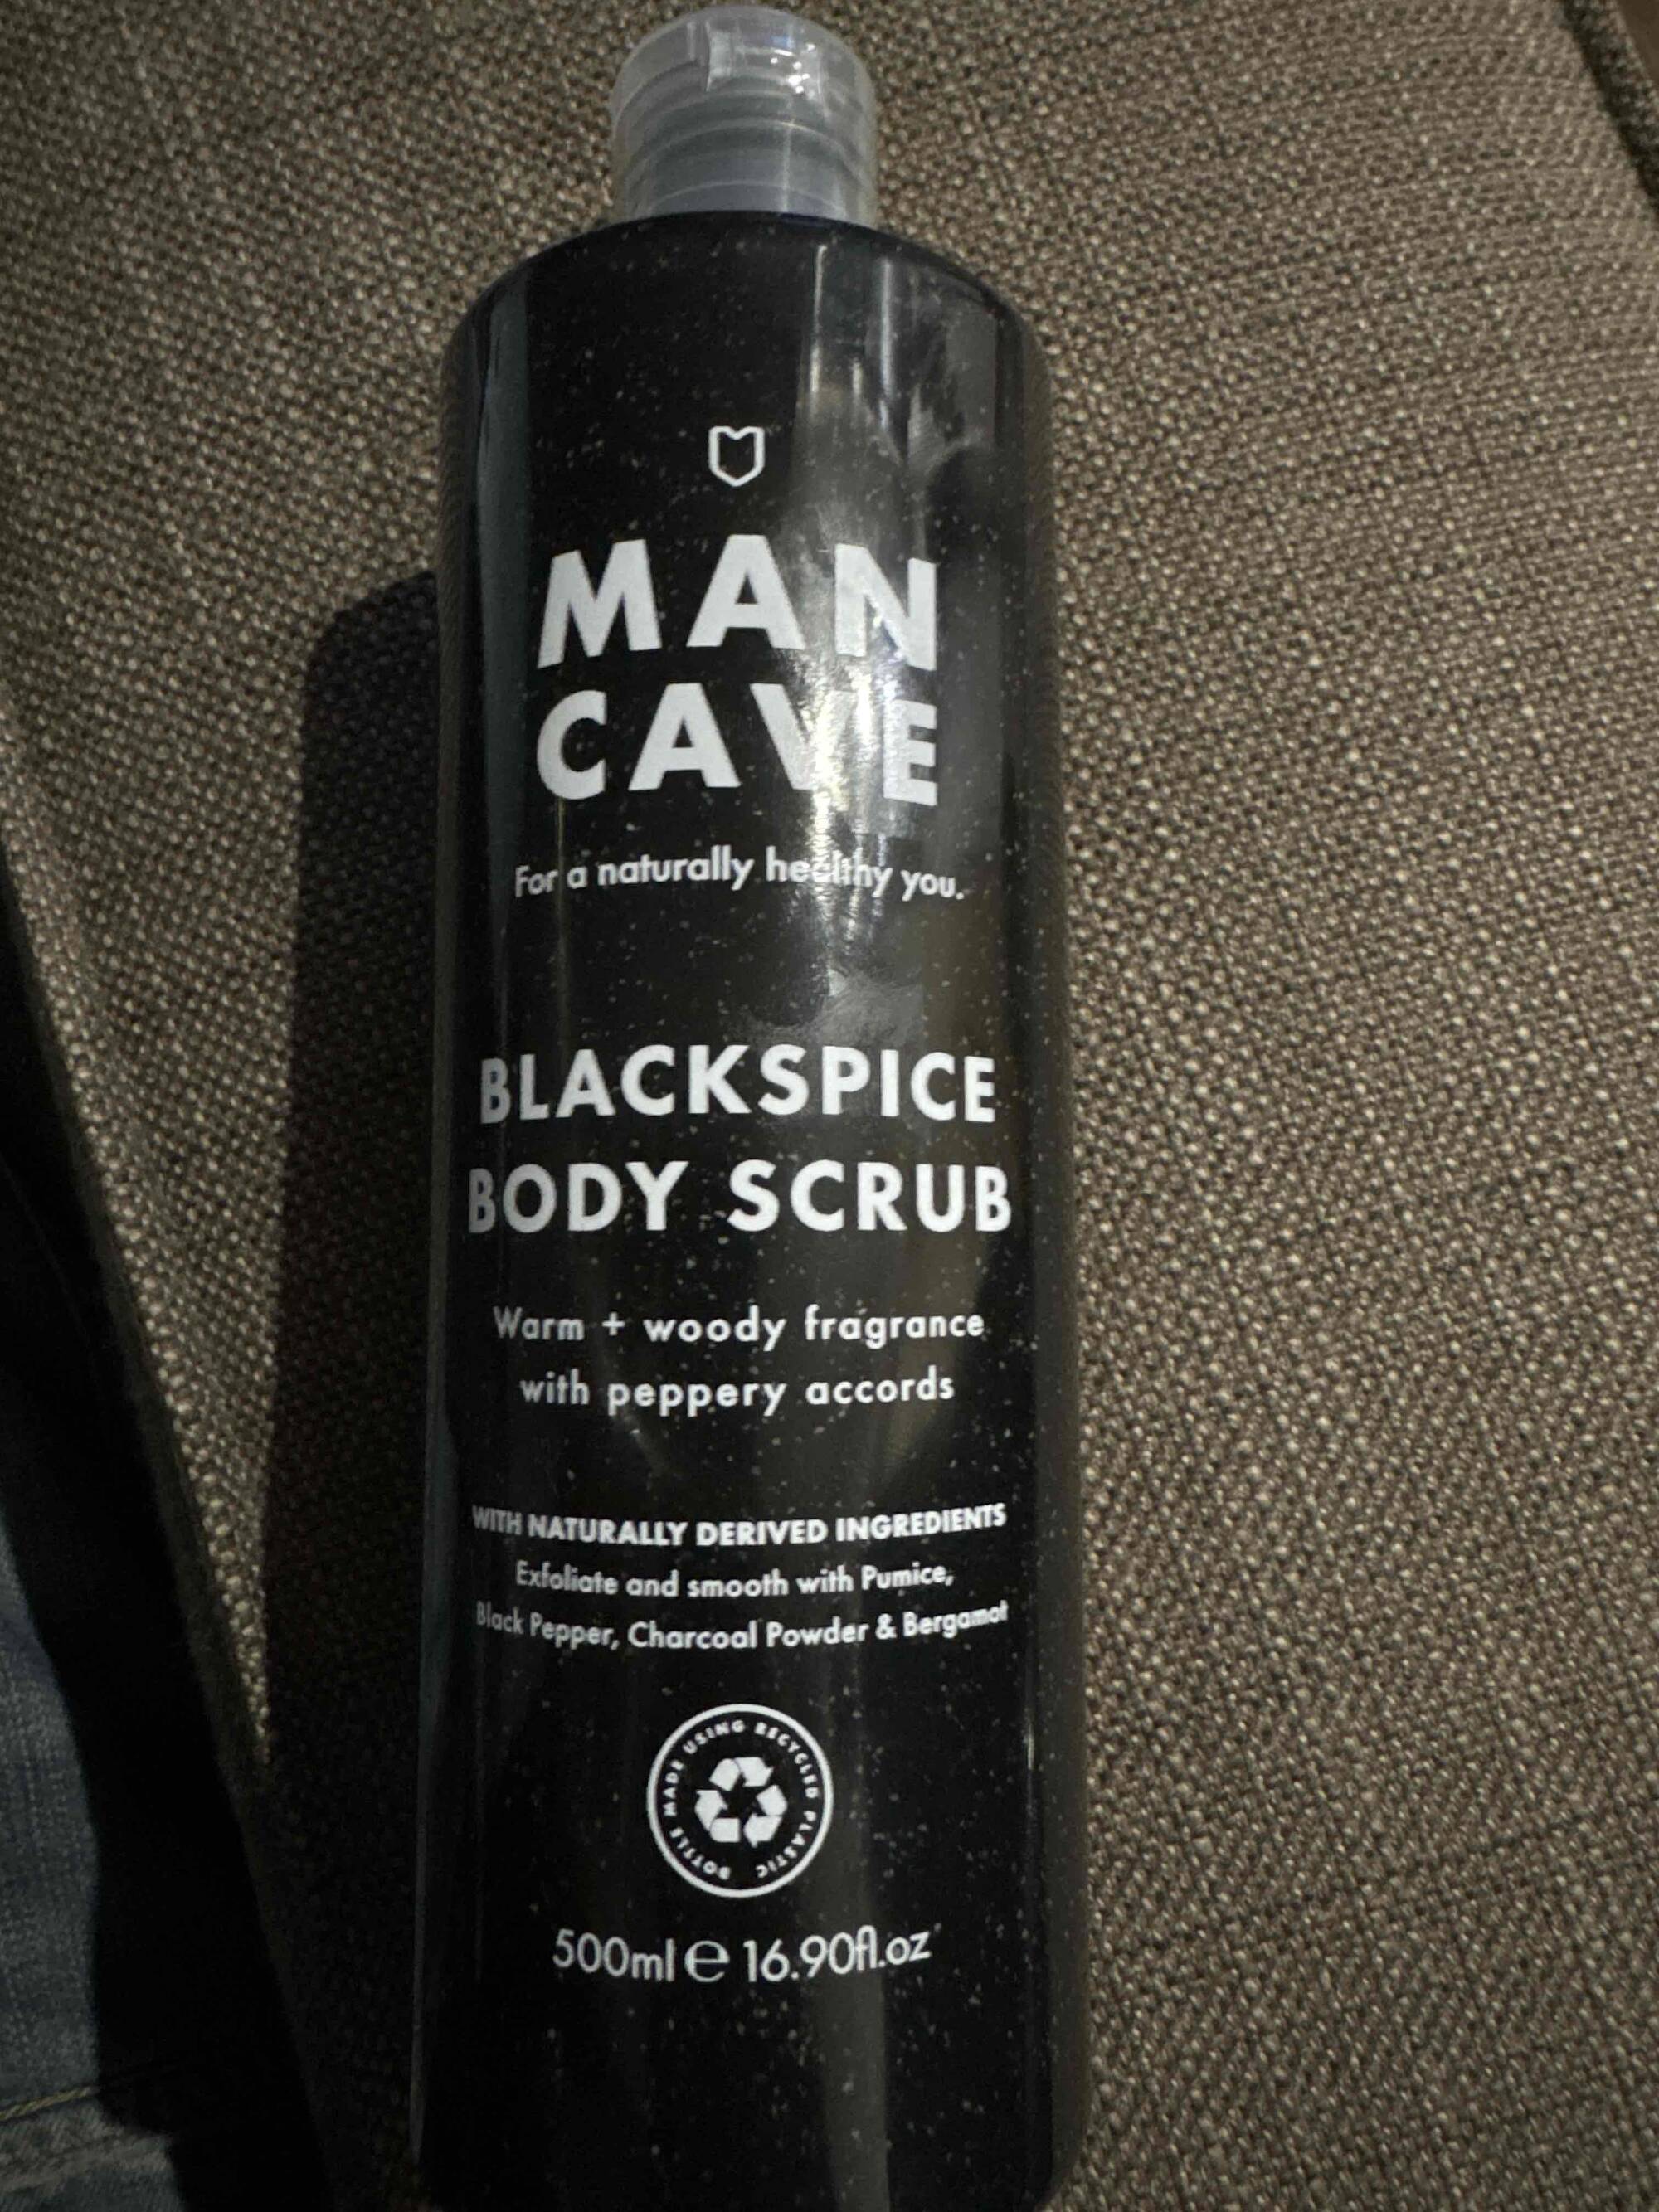 MAN CAVE - Blackspice body scrub